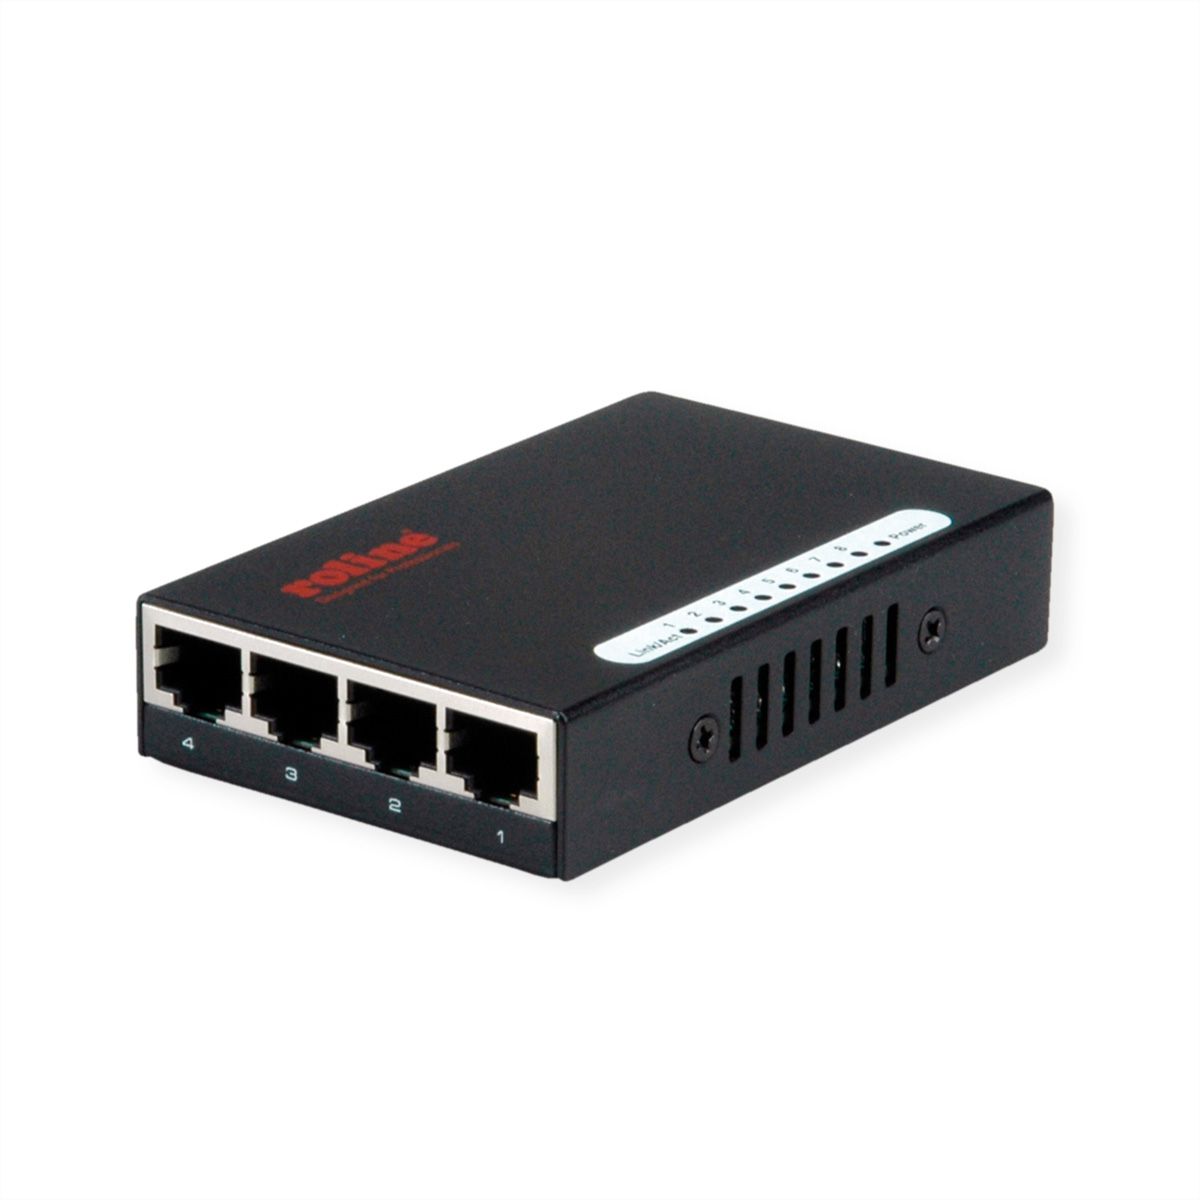 ROLINE Switch Gigabit Ethernet, Pocket, 8 ports - SECOMP France